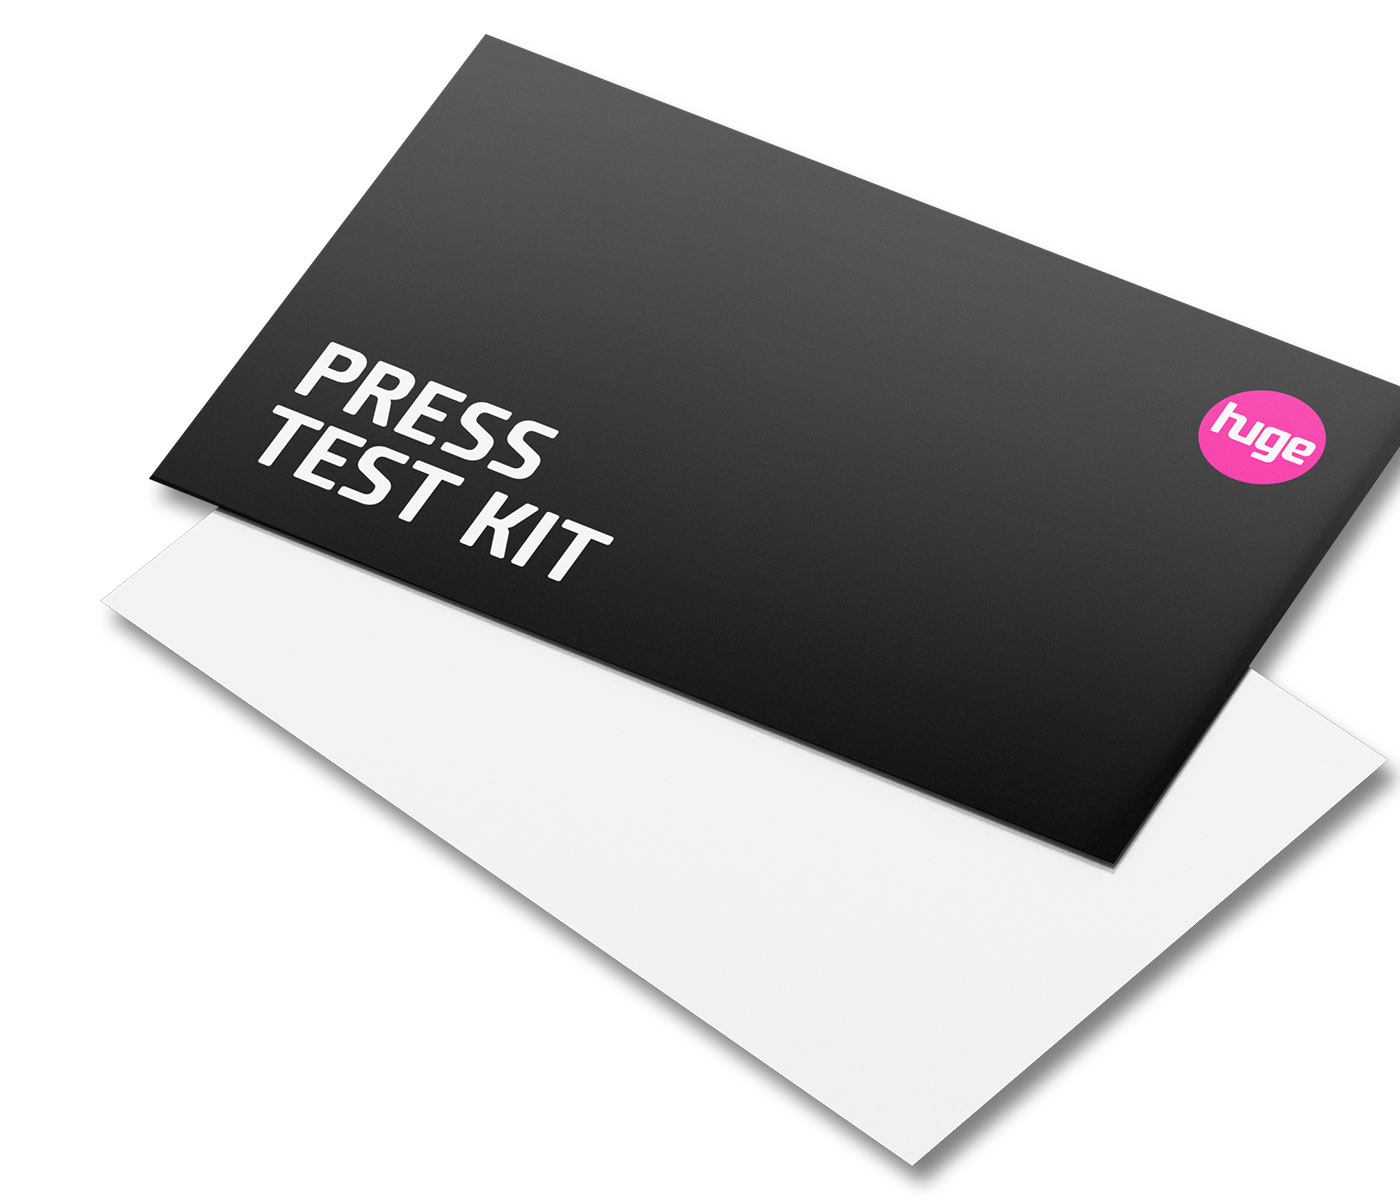 Huge Press Test Kit